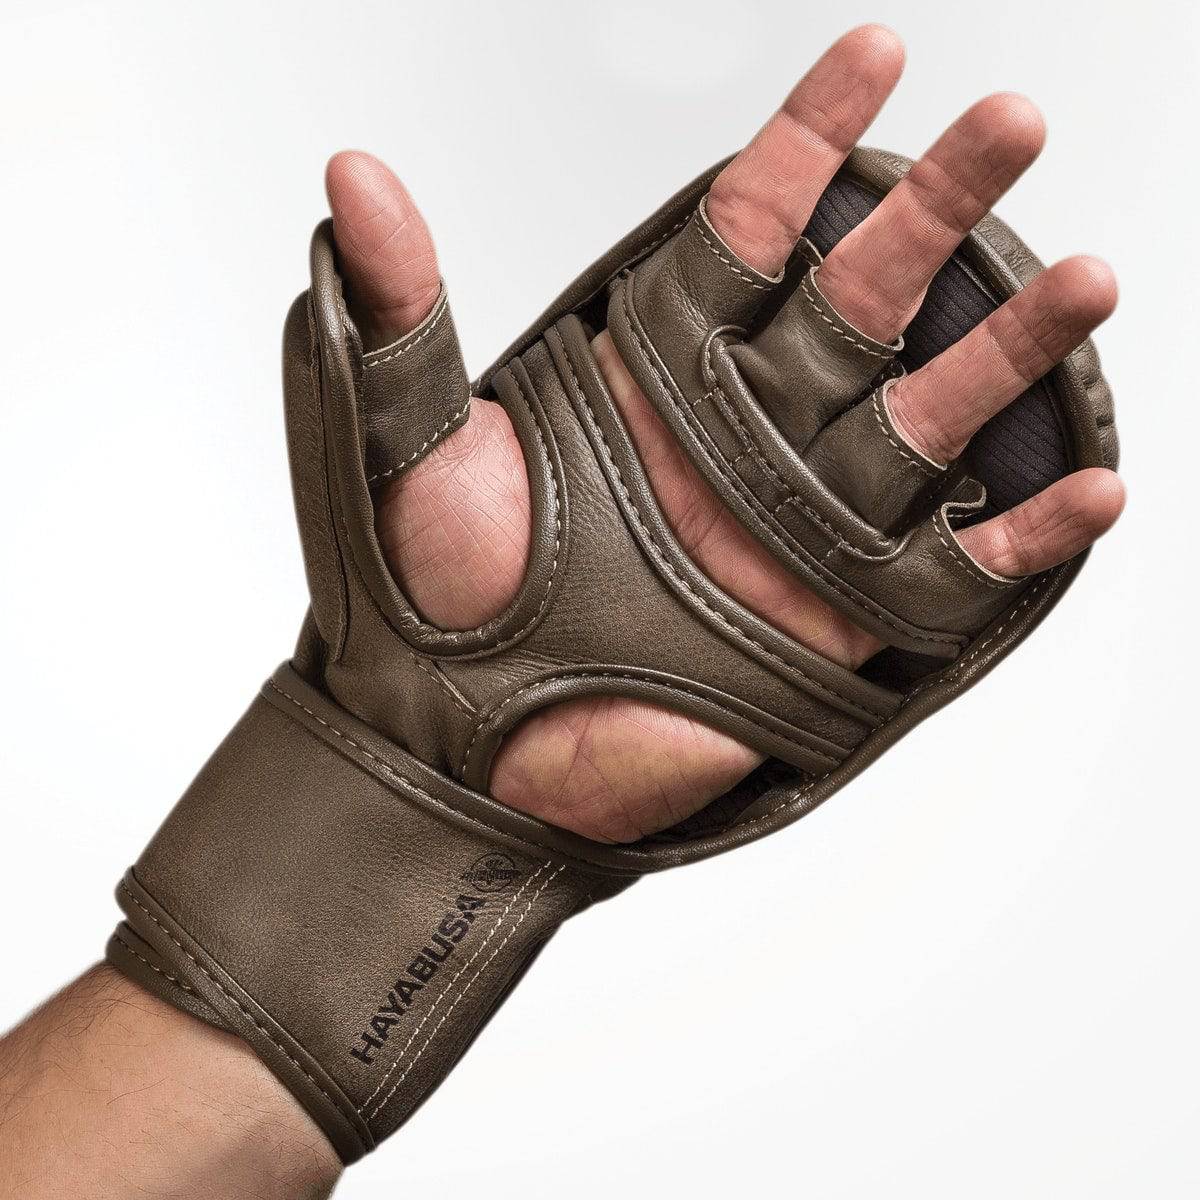 Hayabusa | Hybrid Gloves - T3 LX - 7oz